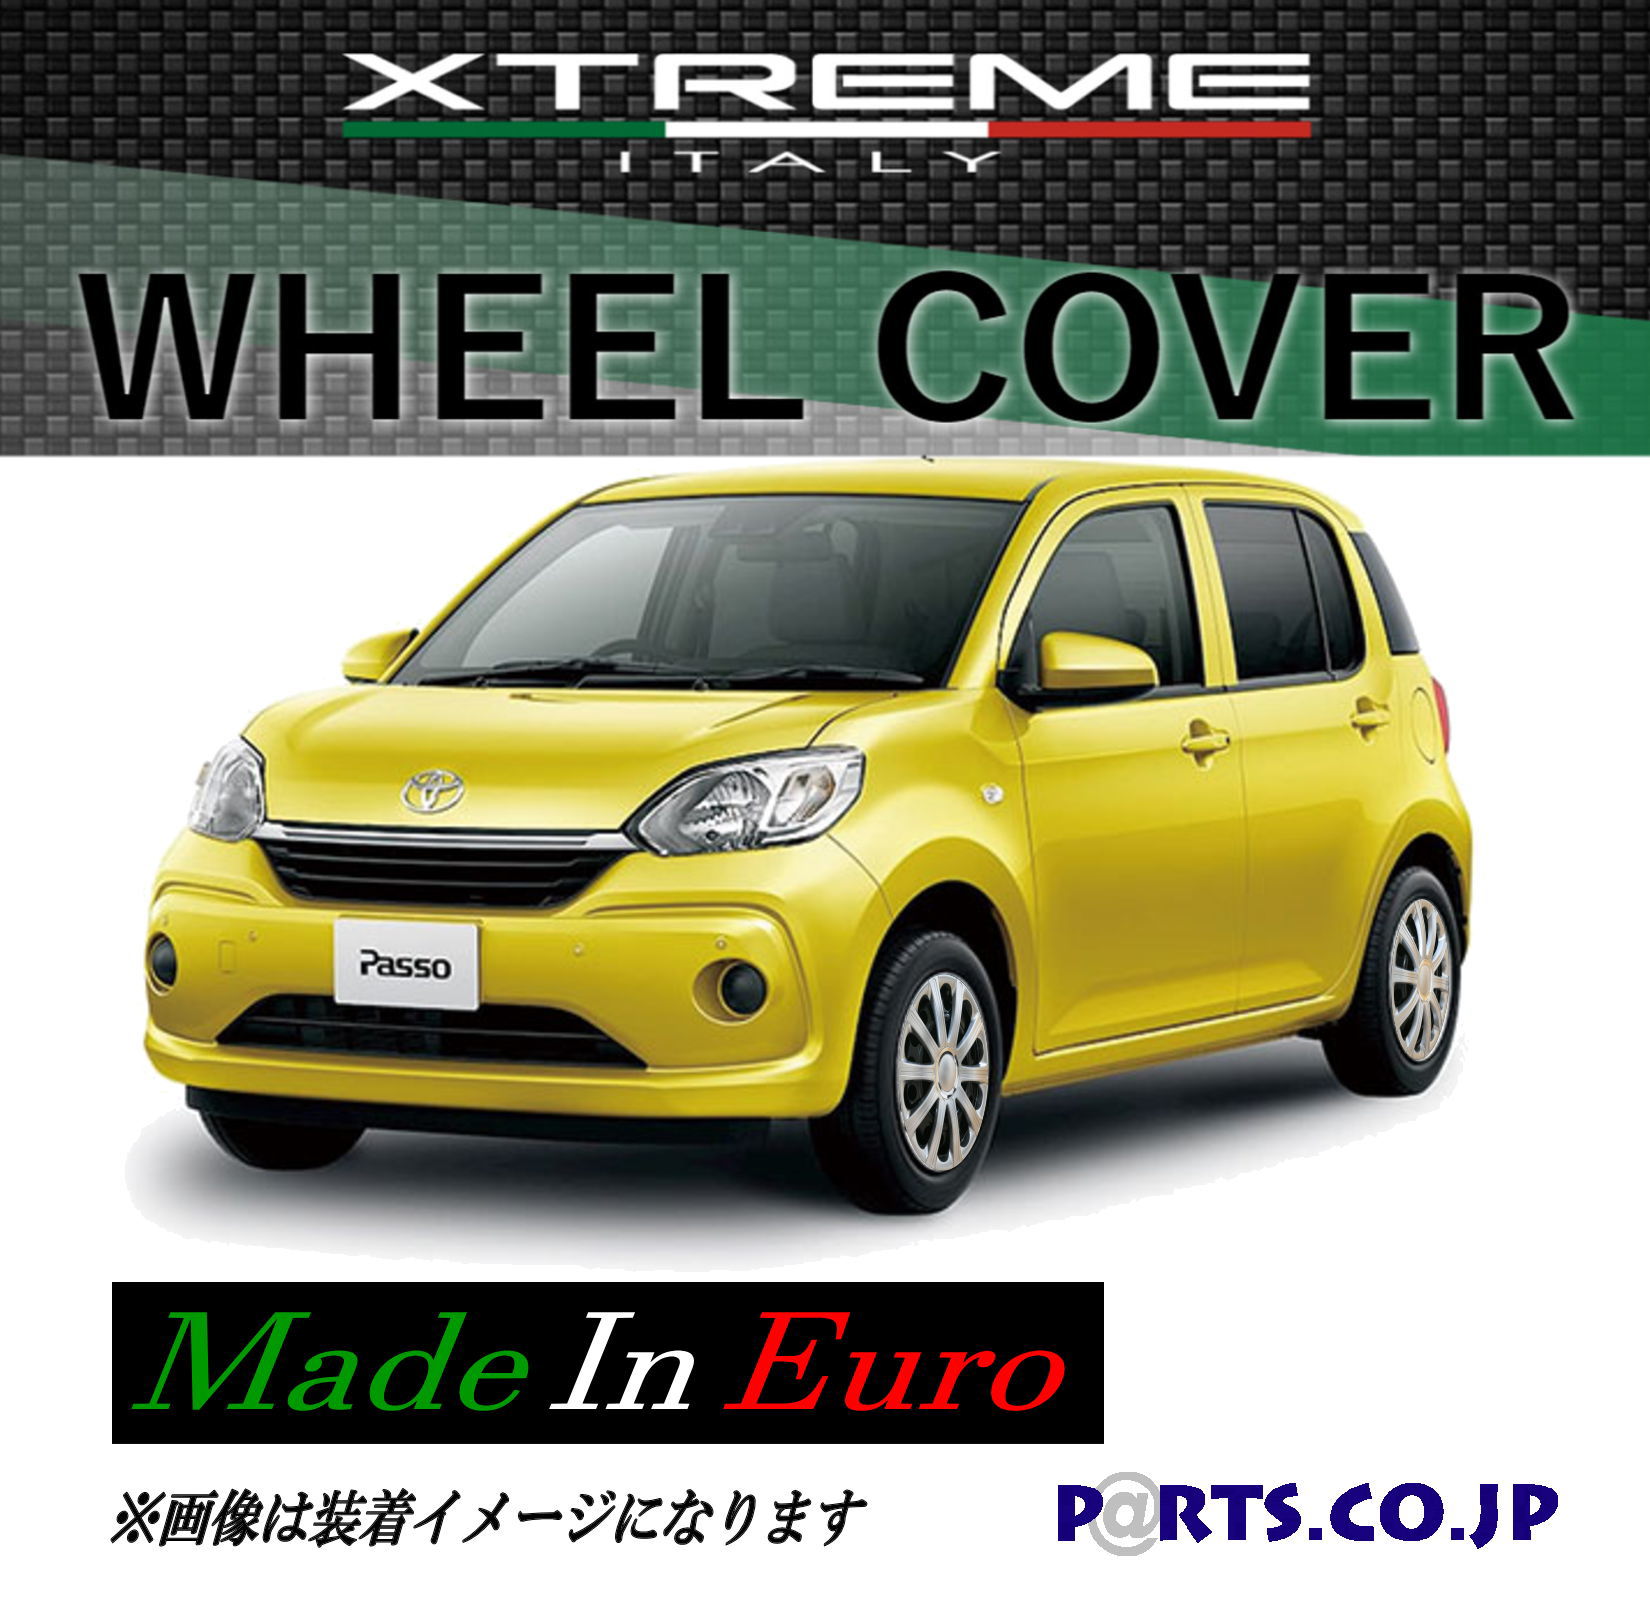 Xtreme ホイールキャップ パッソ 14インチ タイヤ ホイール M700A MODA